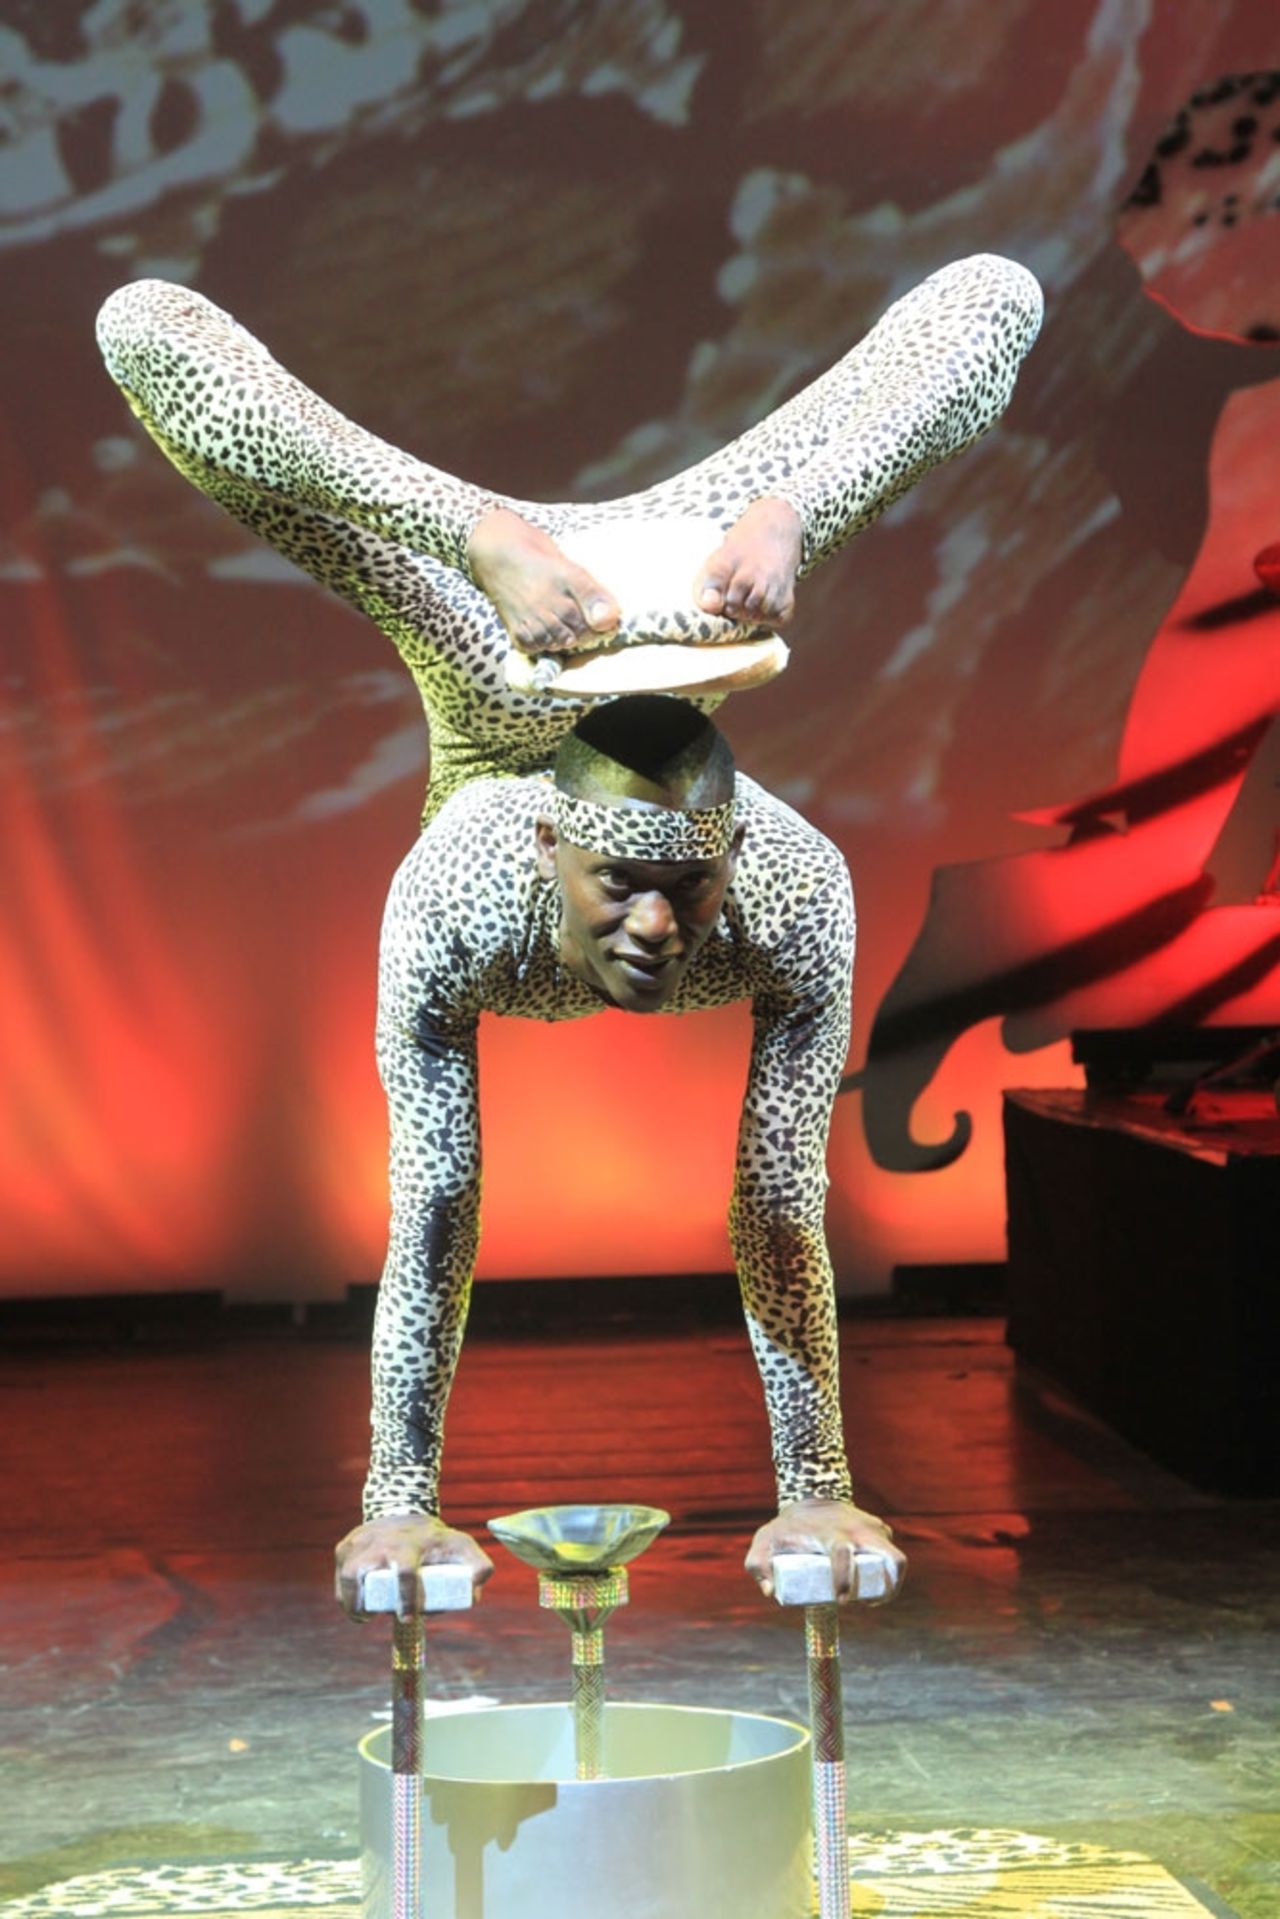 Les presentamos a Lazarus Gitu, un contorsionista de 30 años mejor conocido como el "Hombre Serpiente".